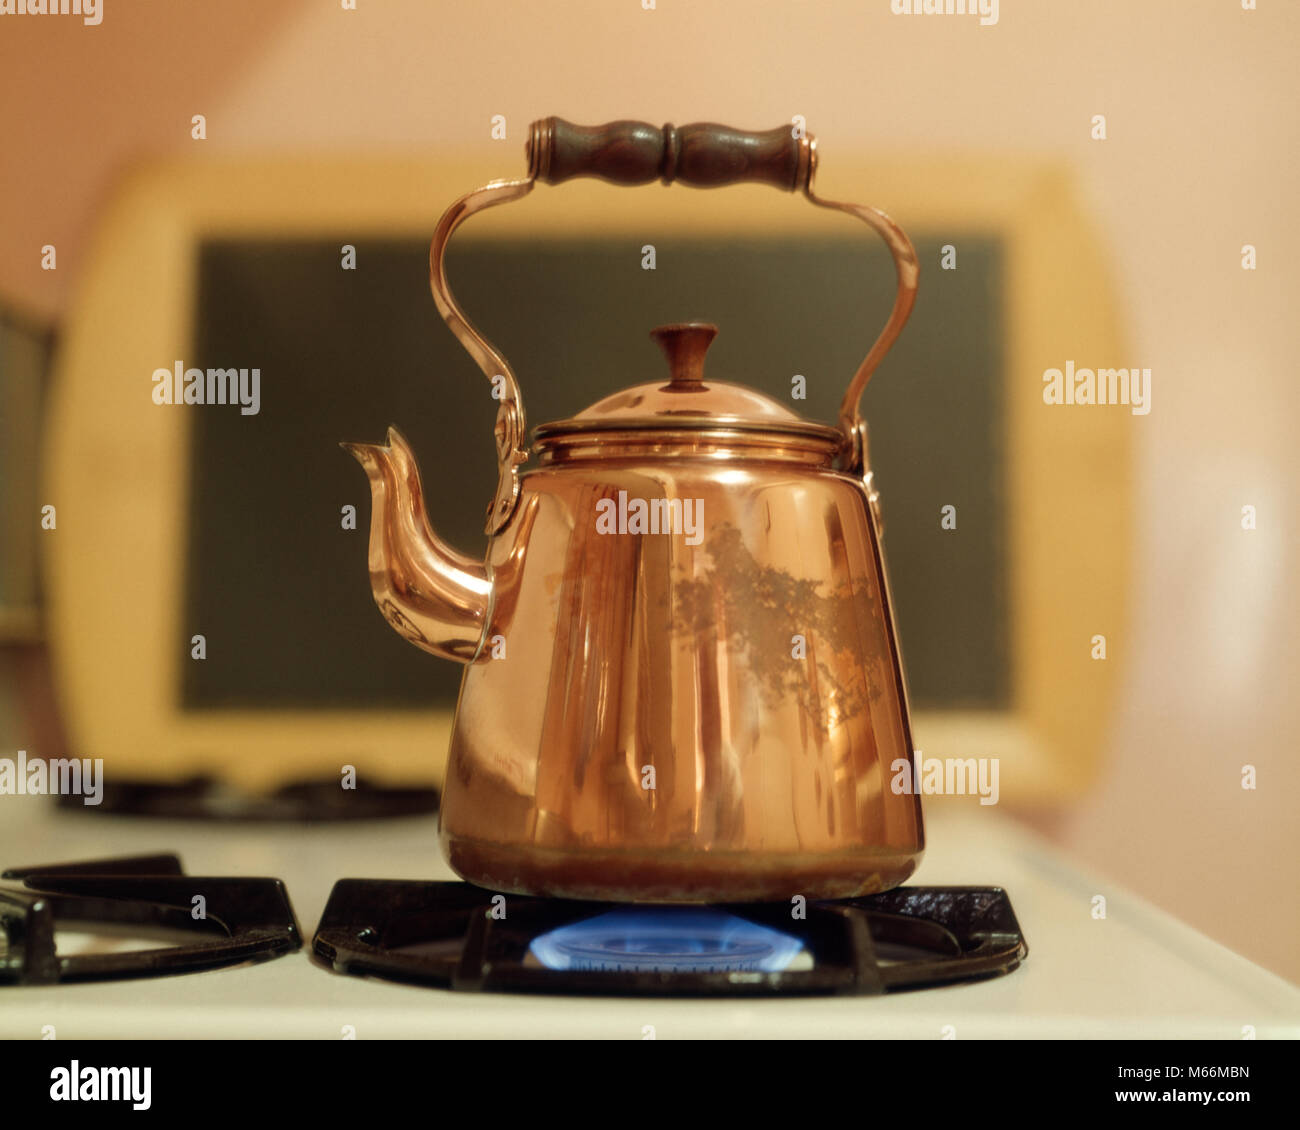 Kupfer Tee Wasserkocher AUF GAS FLAME-kh 13267 CPC 001 HARS ALTMODISCH Stockfoto